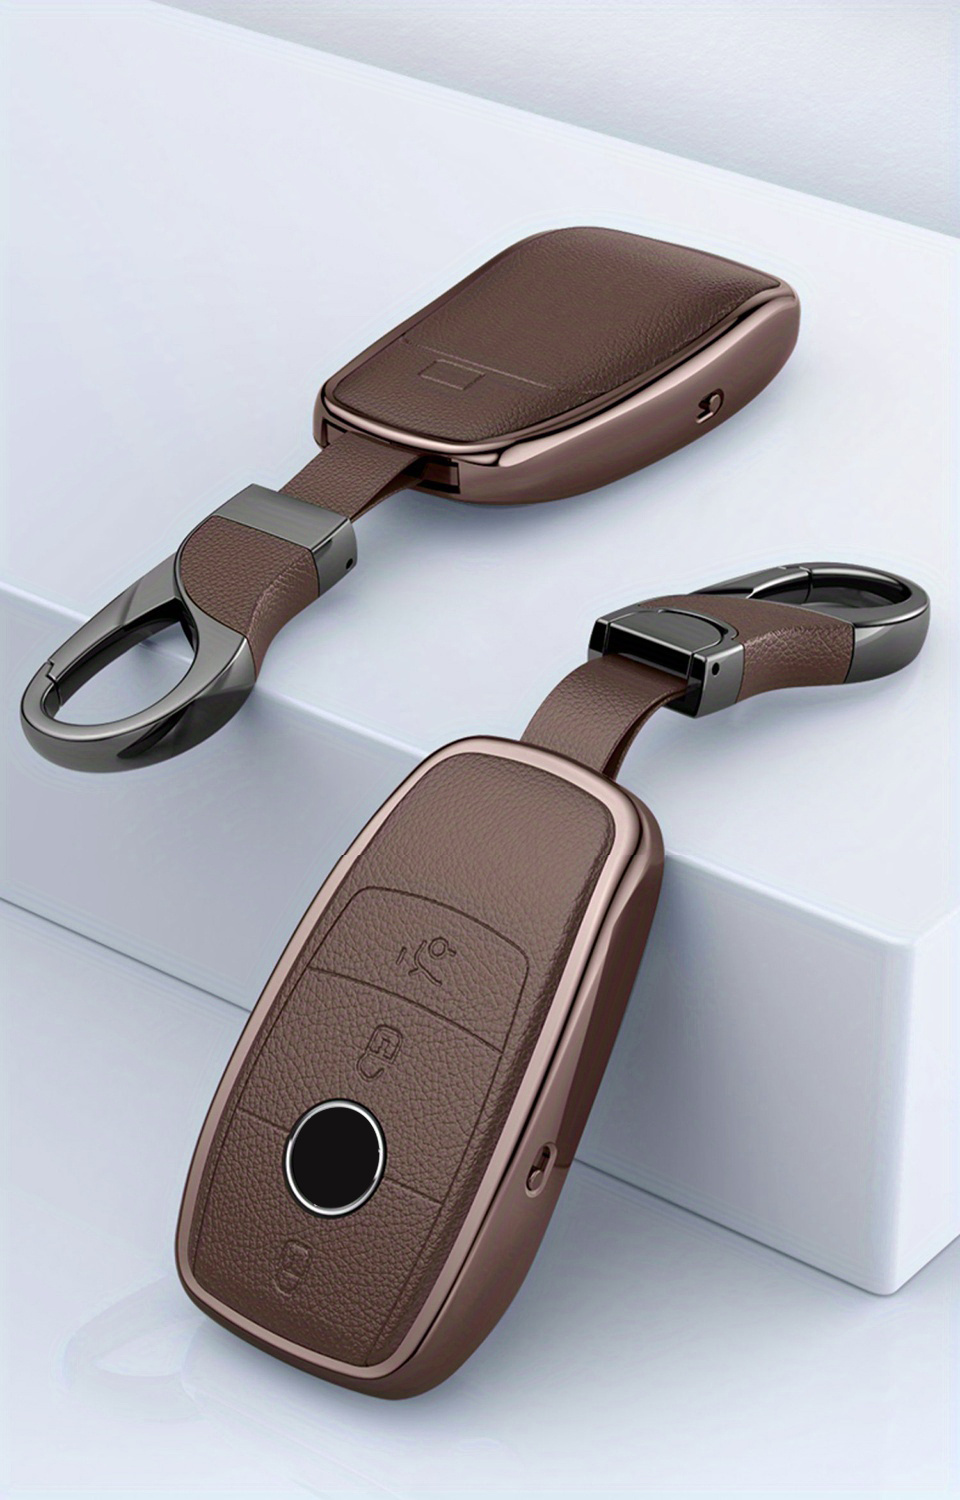 AxleZx Autoschlüssel Hülle Passt für Benz W168 W124 W202 W210 W211 W203  Schlüsselhülle SchutzhüLle Schlüsselanhänger Schlüssel Schutz Fernbedienung  Zubehör: : Elektronik & Foto